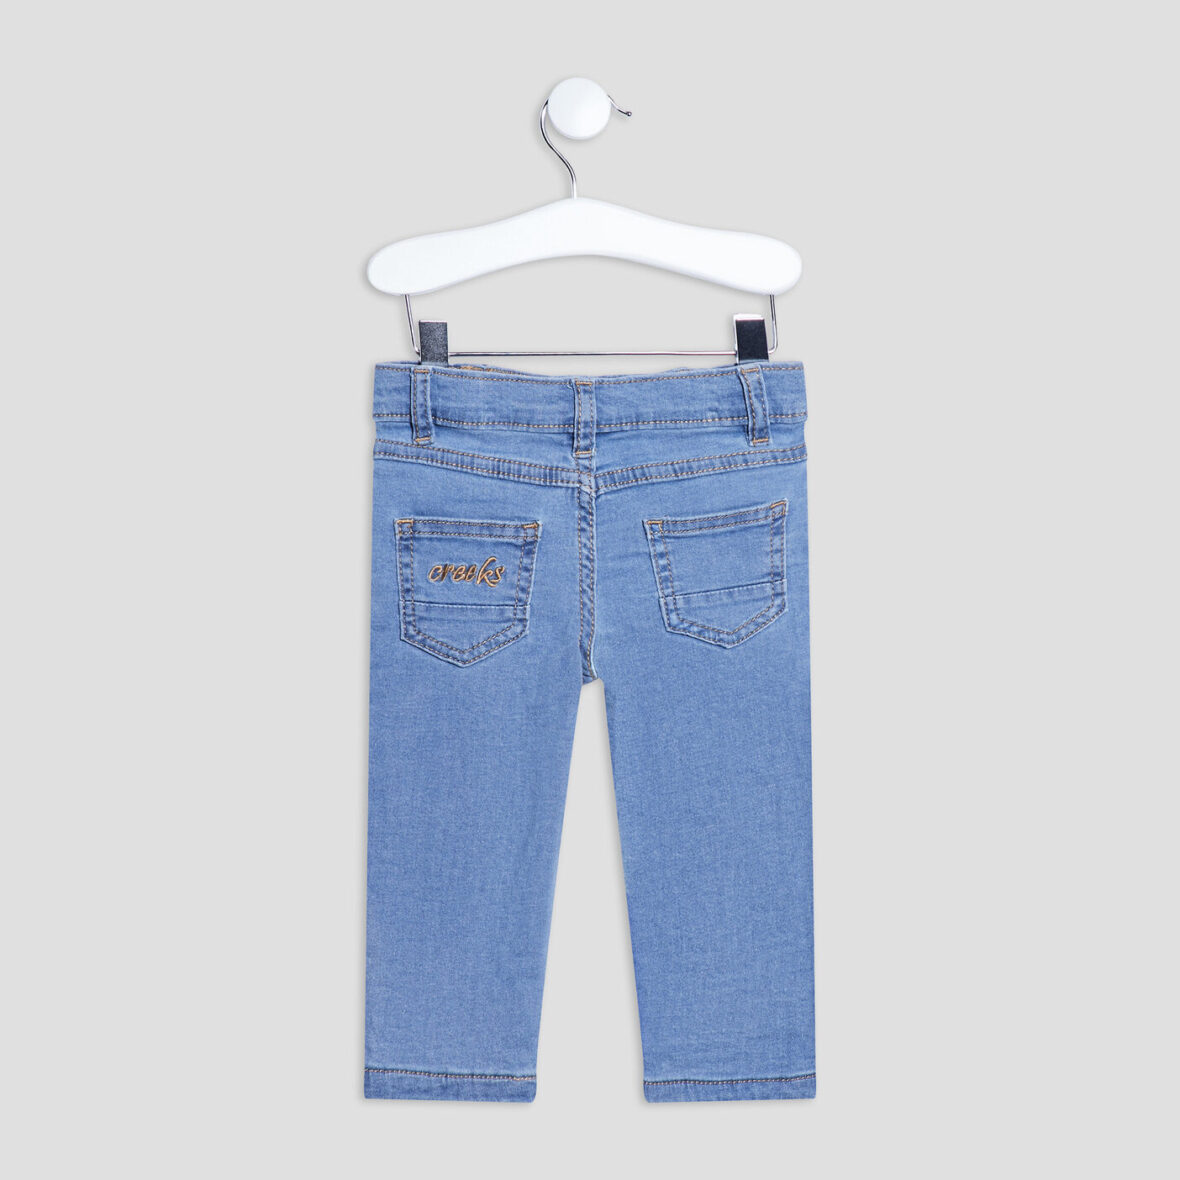 jeans-droit-taille-ajustable-details-dechires-denim-bleach-bebef-a-36165600636430065